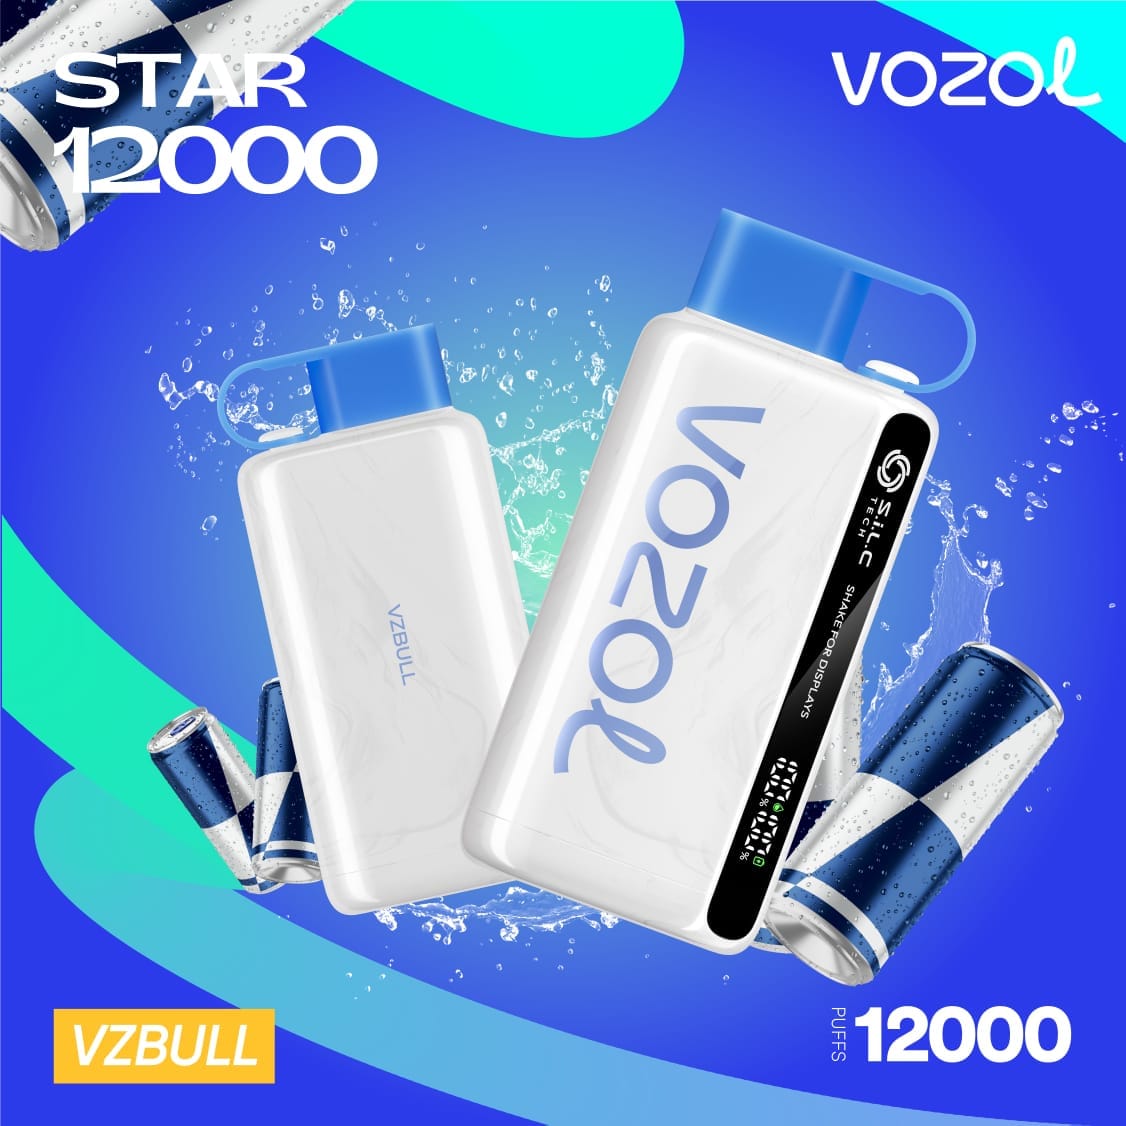 VOZOL STAR 12000 - VZBULL